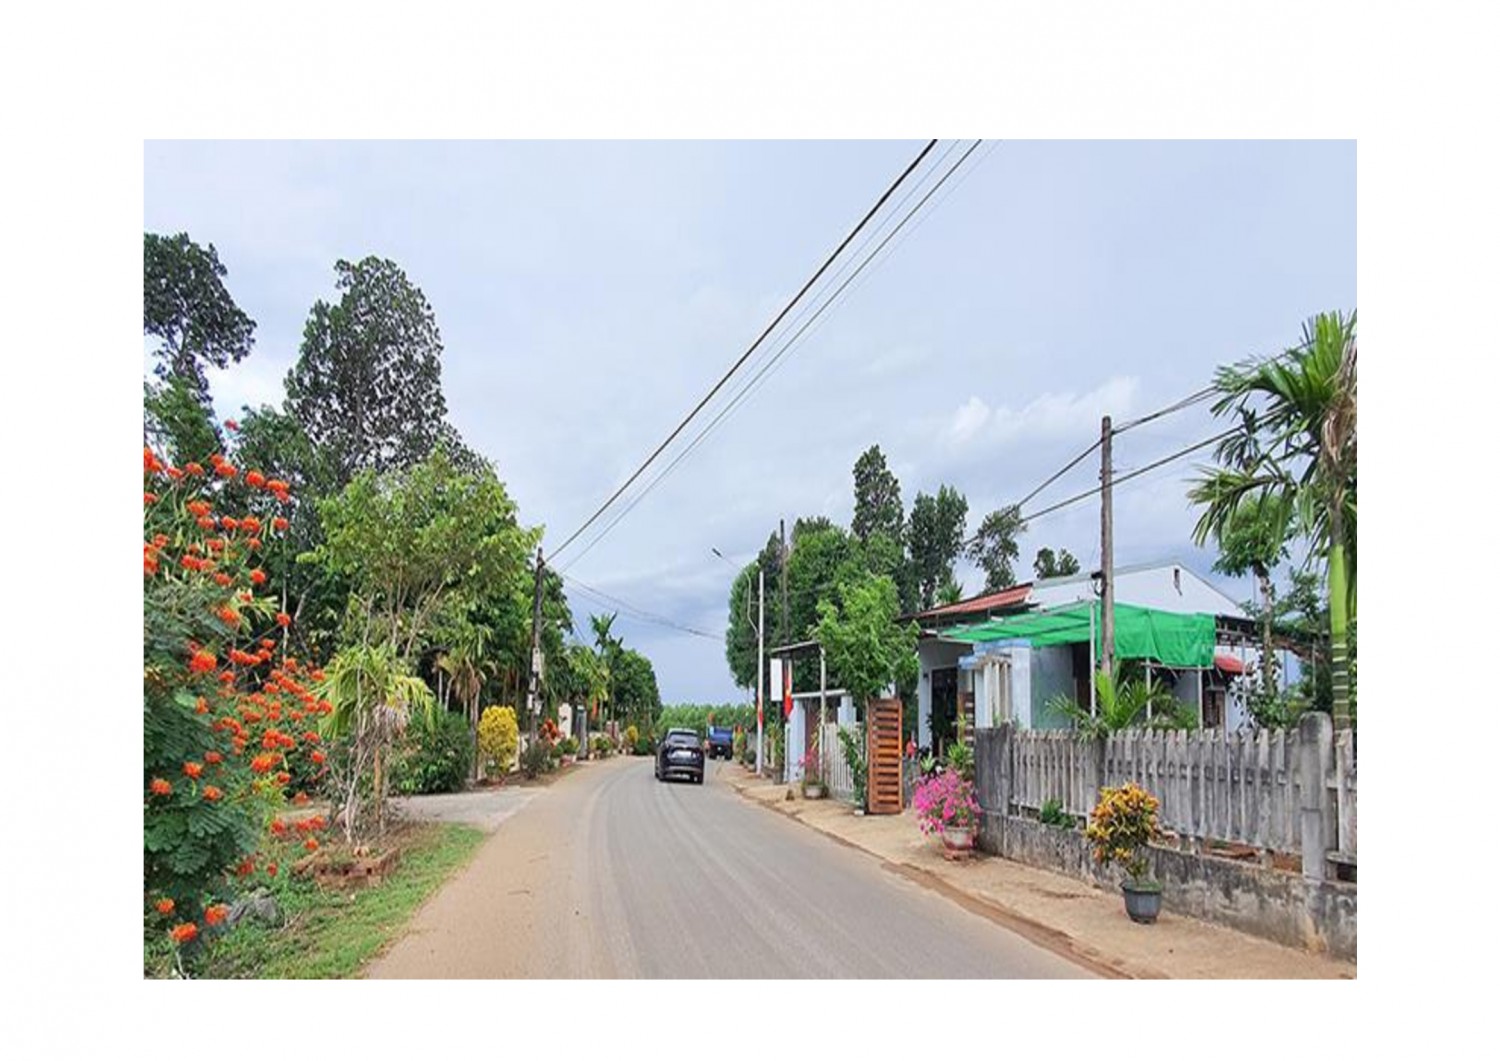 Chương trình xây dựng nông thôn mới đem lại diện mạo mới cho xã Cam Chính, huyện Cam Lộ